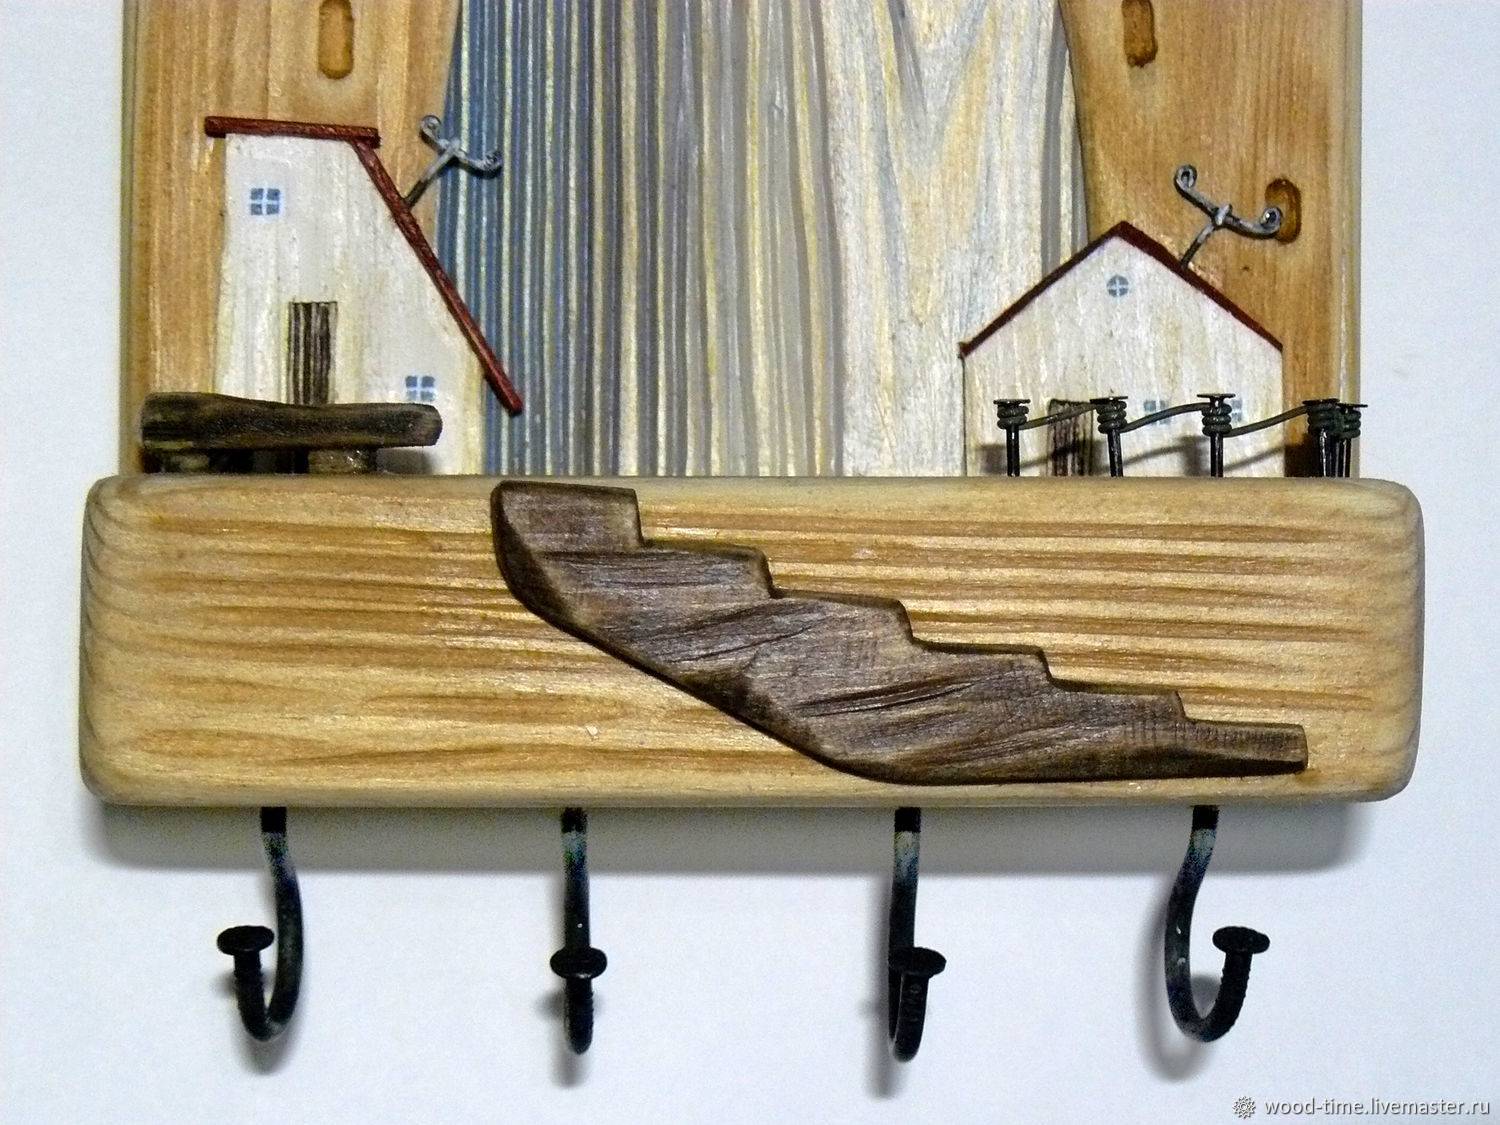 Вешалка в баню своими руками: фото лучших идей и вариантов с советами от профи, как сделать деревянную вешалку с крючками